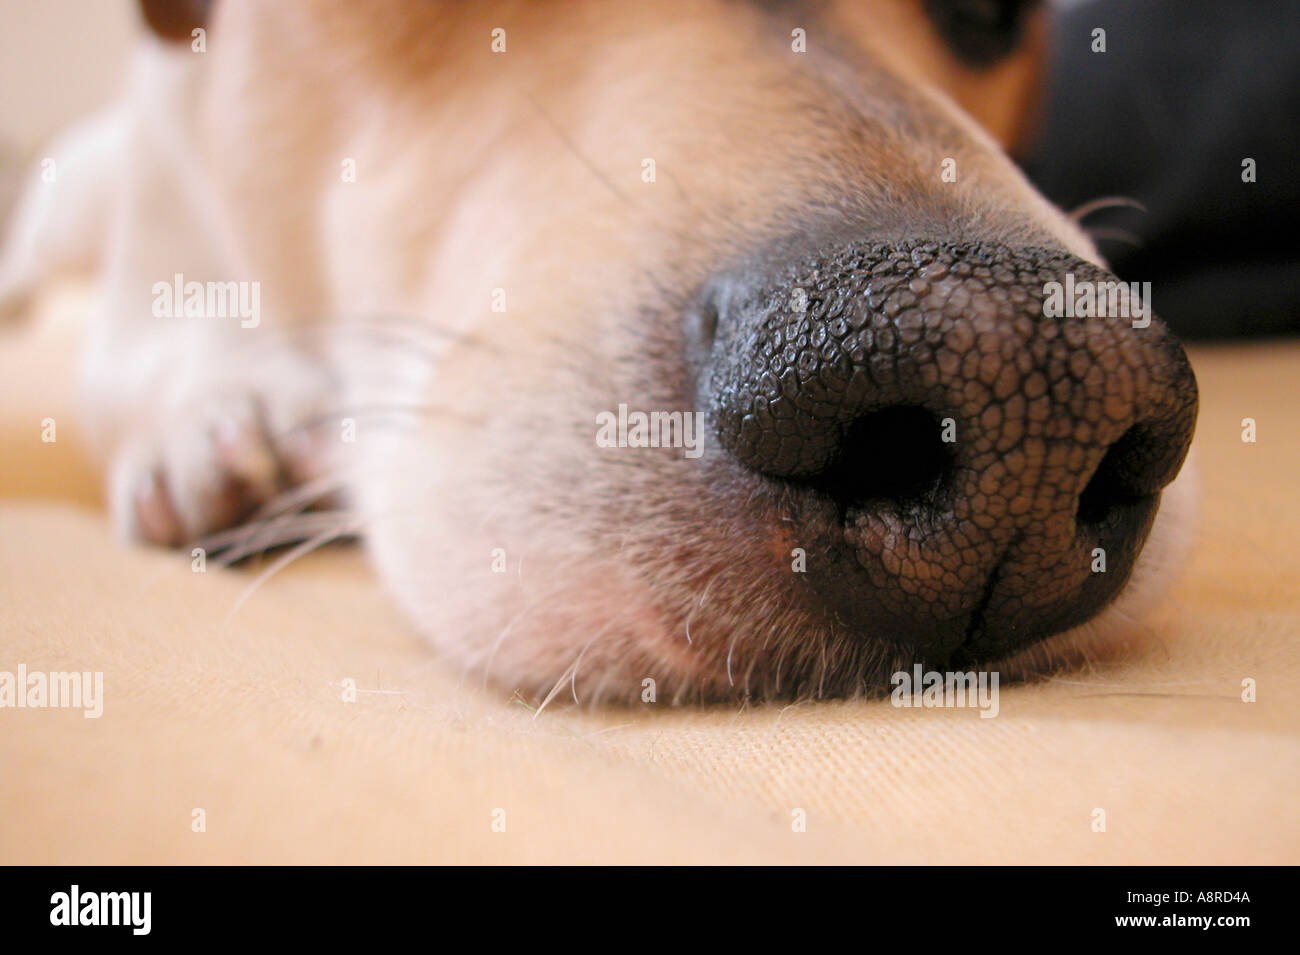 Какой нос у щенка. Собачий нос. У собаки потресканный нос.